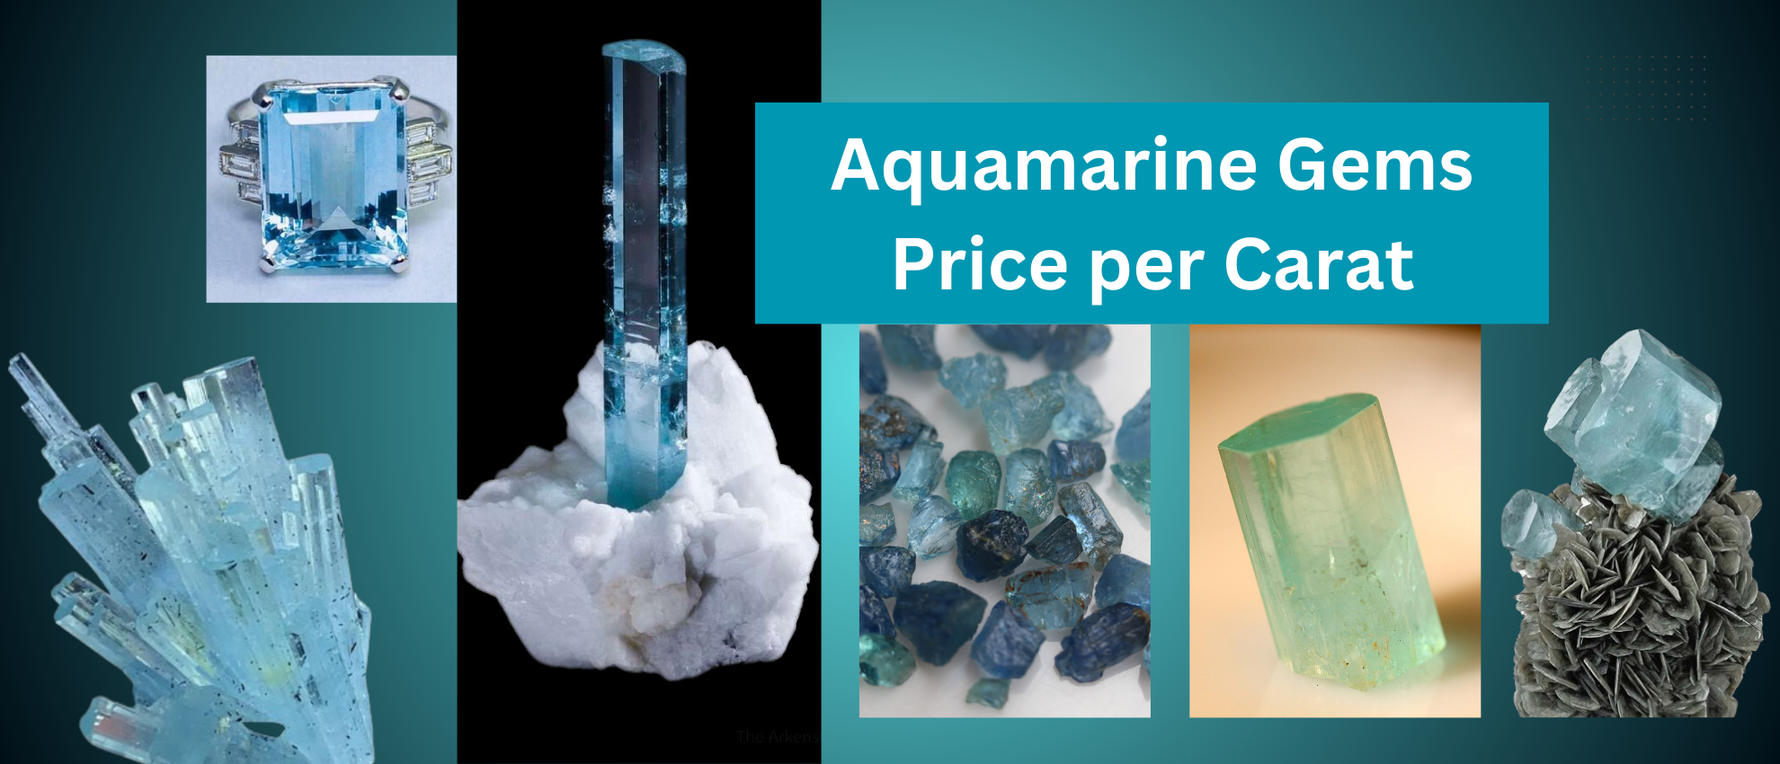 Is Aquamarine a Very Expensive Stone? Aquamarine Gems Price per Carat